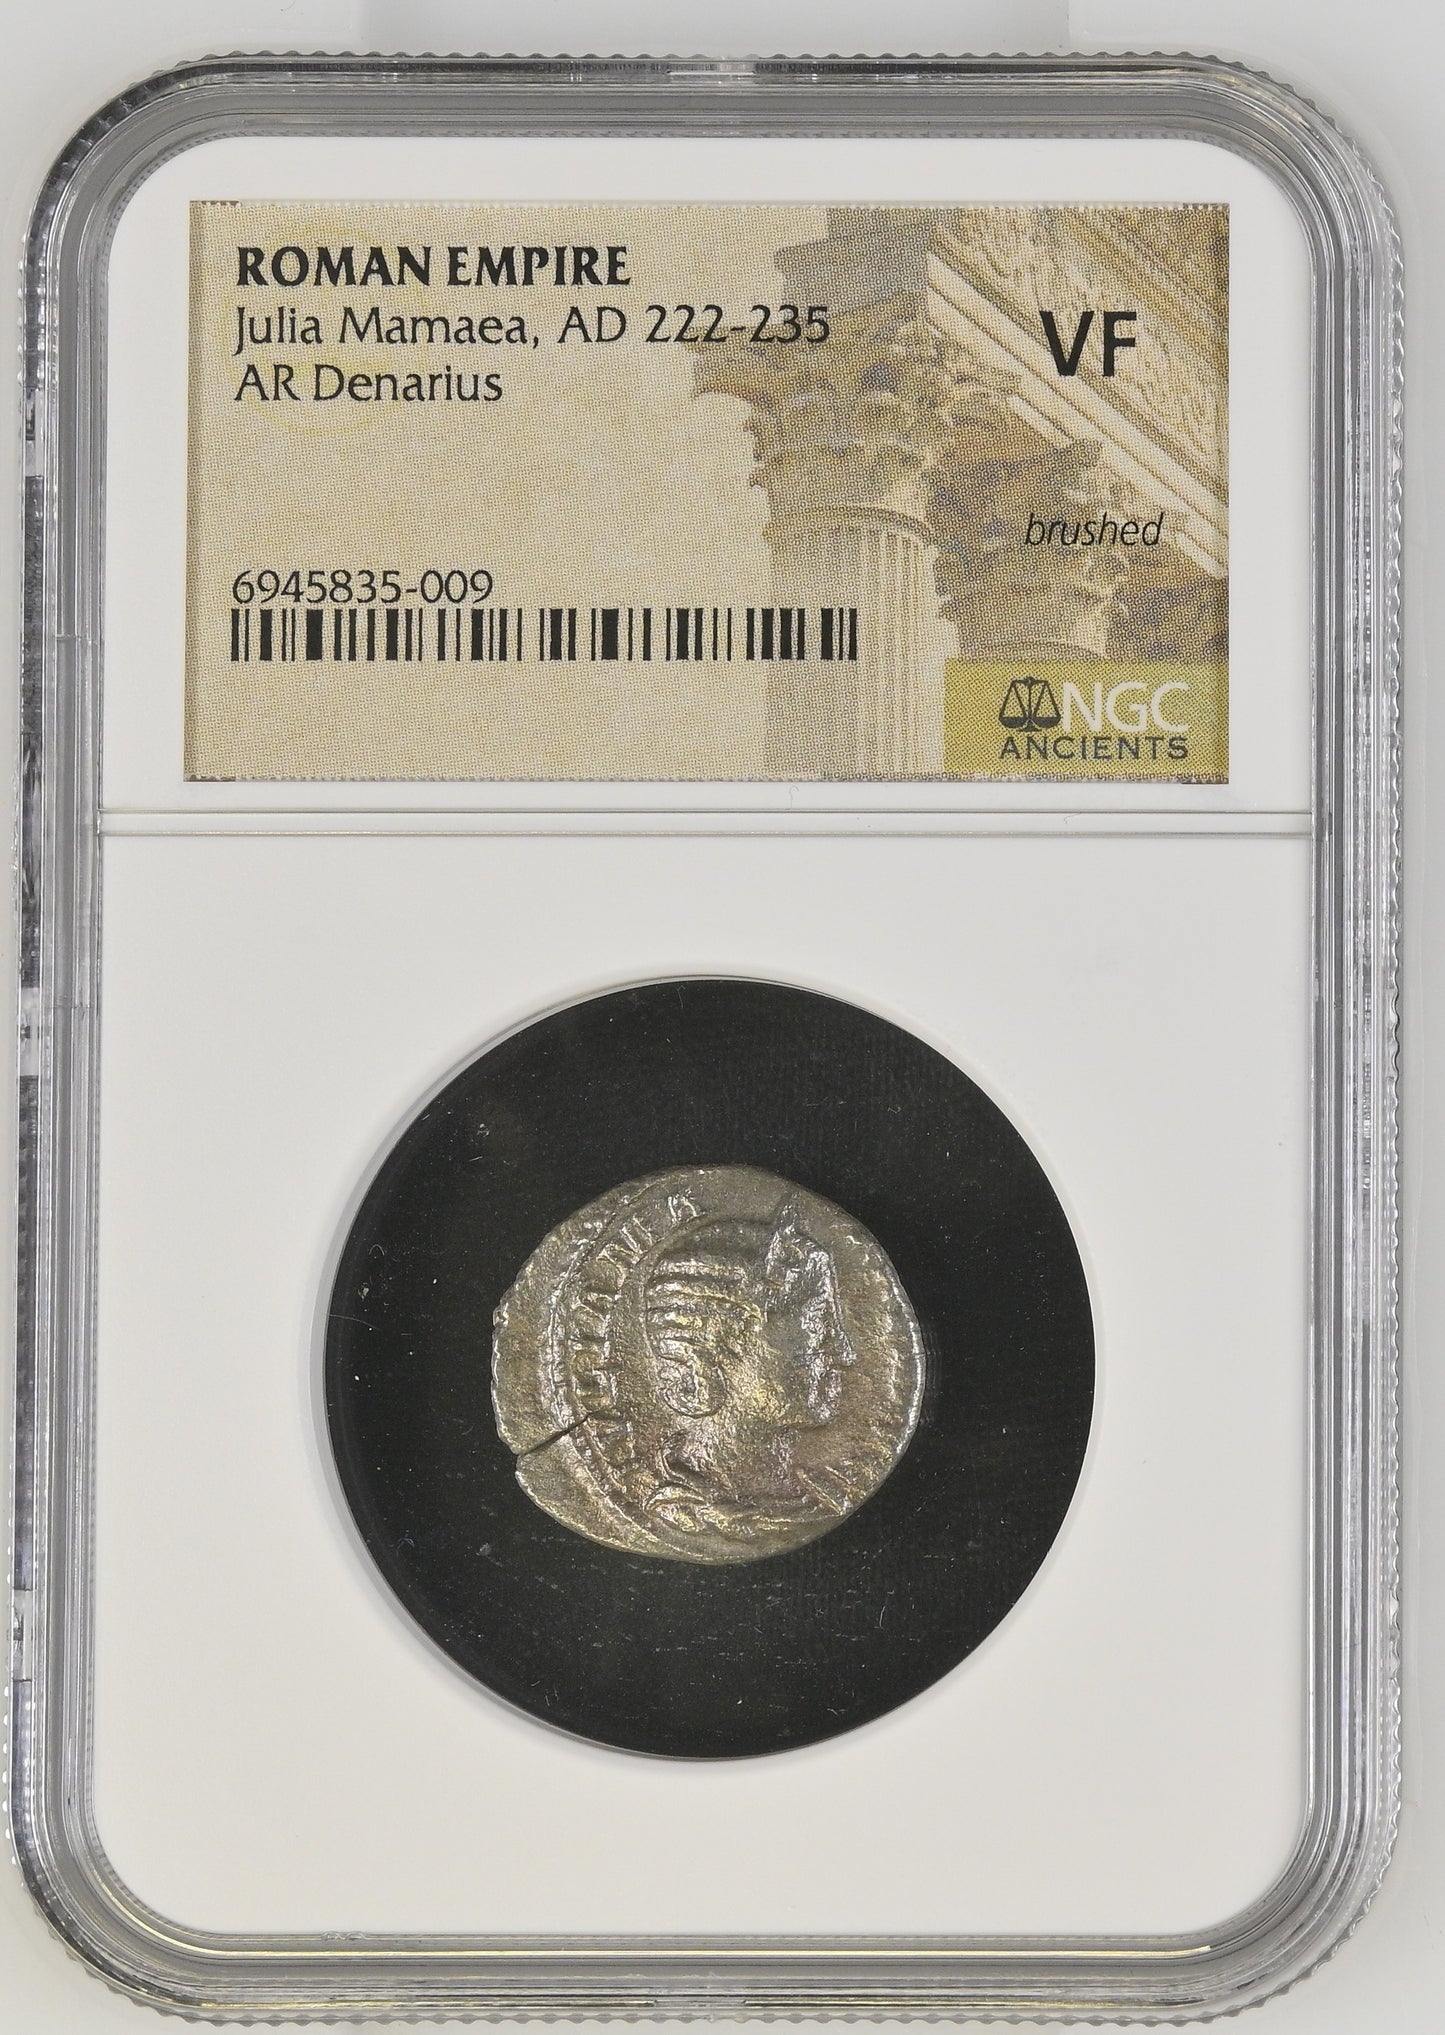 Roman Empire - Julia Mamaea - Silver Denarius - NGC VF